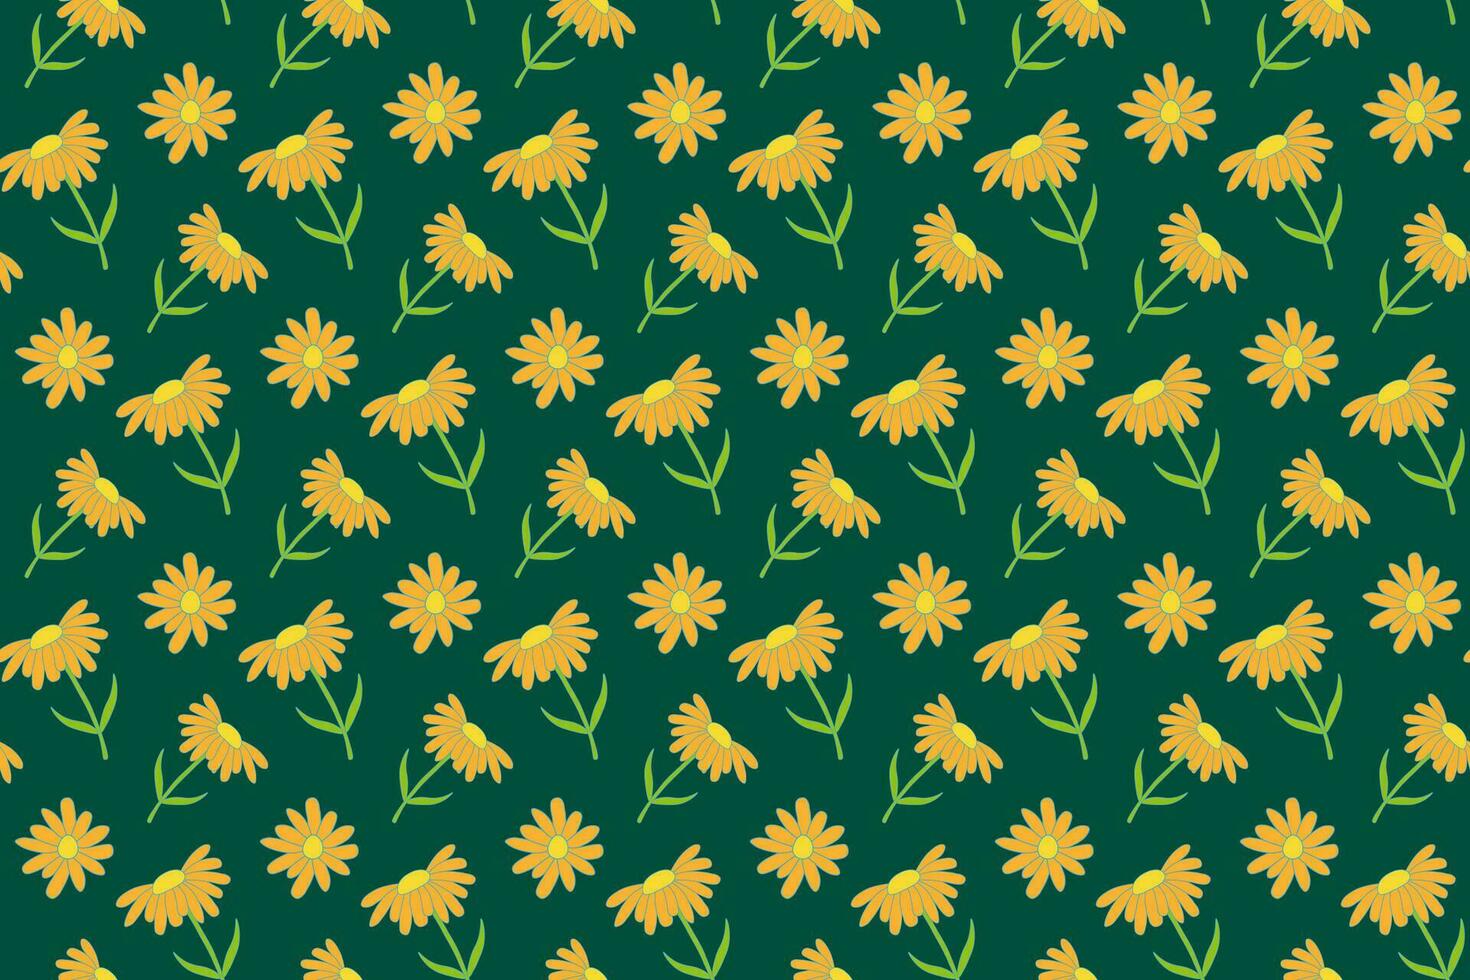 Gelb Gänseblümchen Blumen nahtlos Muster. Vektor Grün Hintergrund. Kamille mit Orange Blütenblätter. Swatch zum Verpackung Papier oder Stoff. eben Stil Design